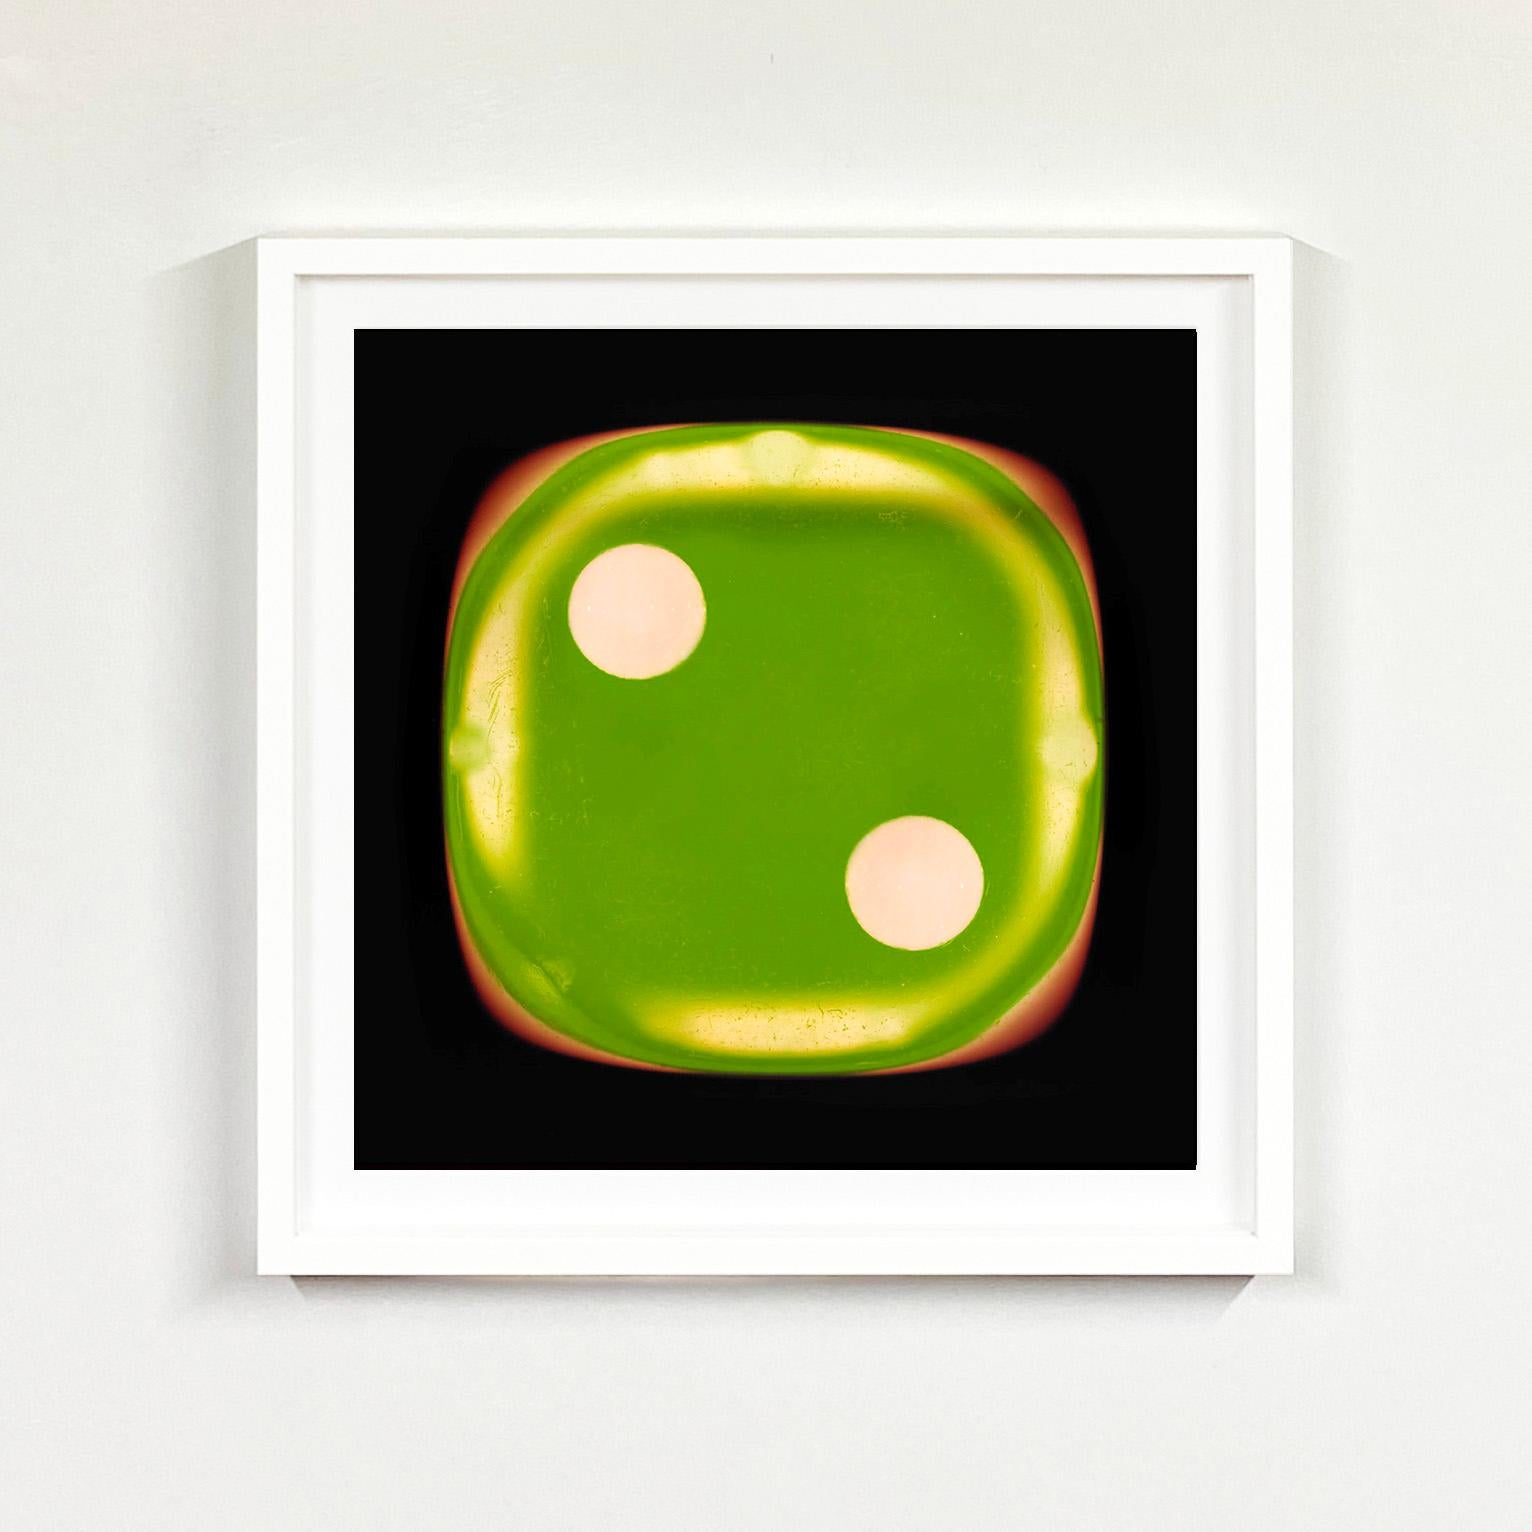 Dice-Serie, Grün zwei - Pop-Art-Farbfotografie – Print von Heidler & Heeps